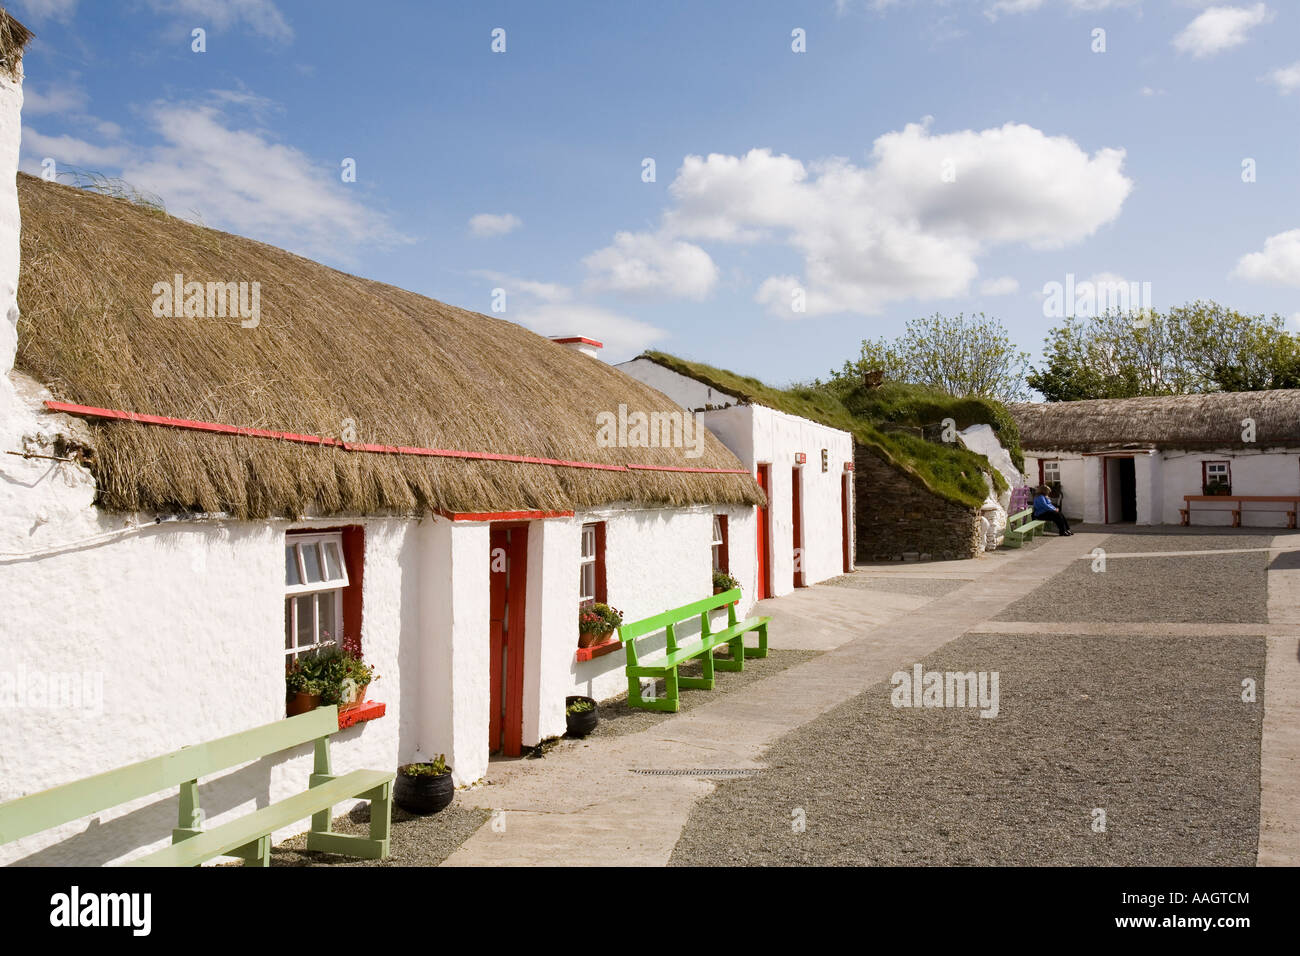 La péninsule d'Inishowen Donegal Irlande Île de Doagh Famine Village house in1900s street Banque D'Images